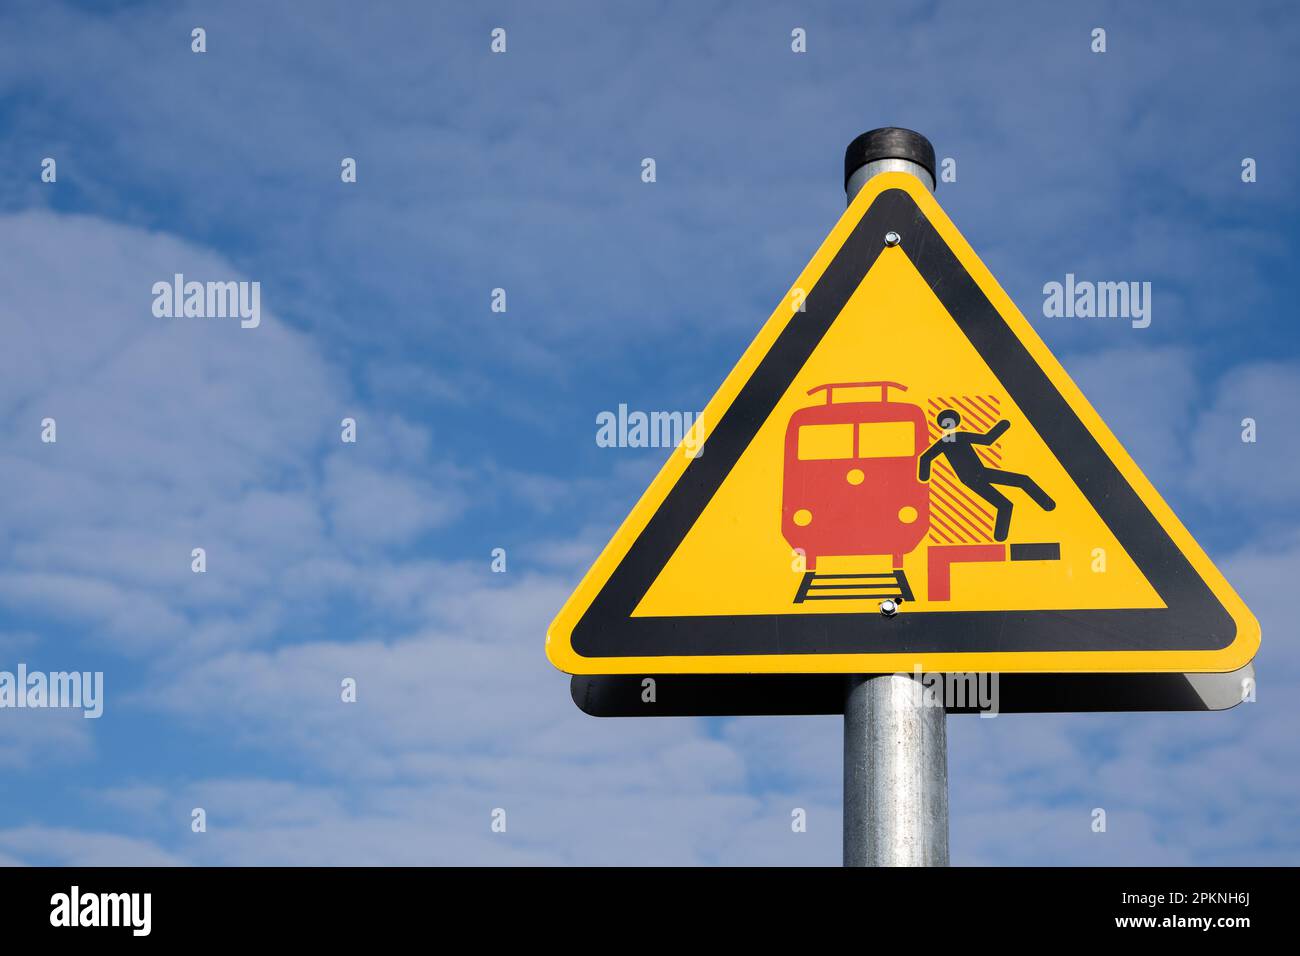 Segnale di avvertimento giallo triangolare per i passeggeri su una piattaforma tedesca che significa attenzione all'arrivo e al transito dei treni Foto Stock